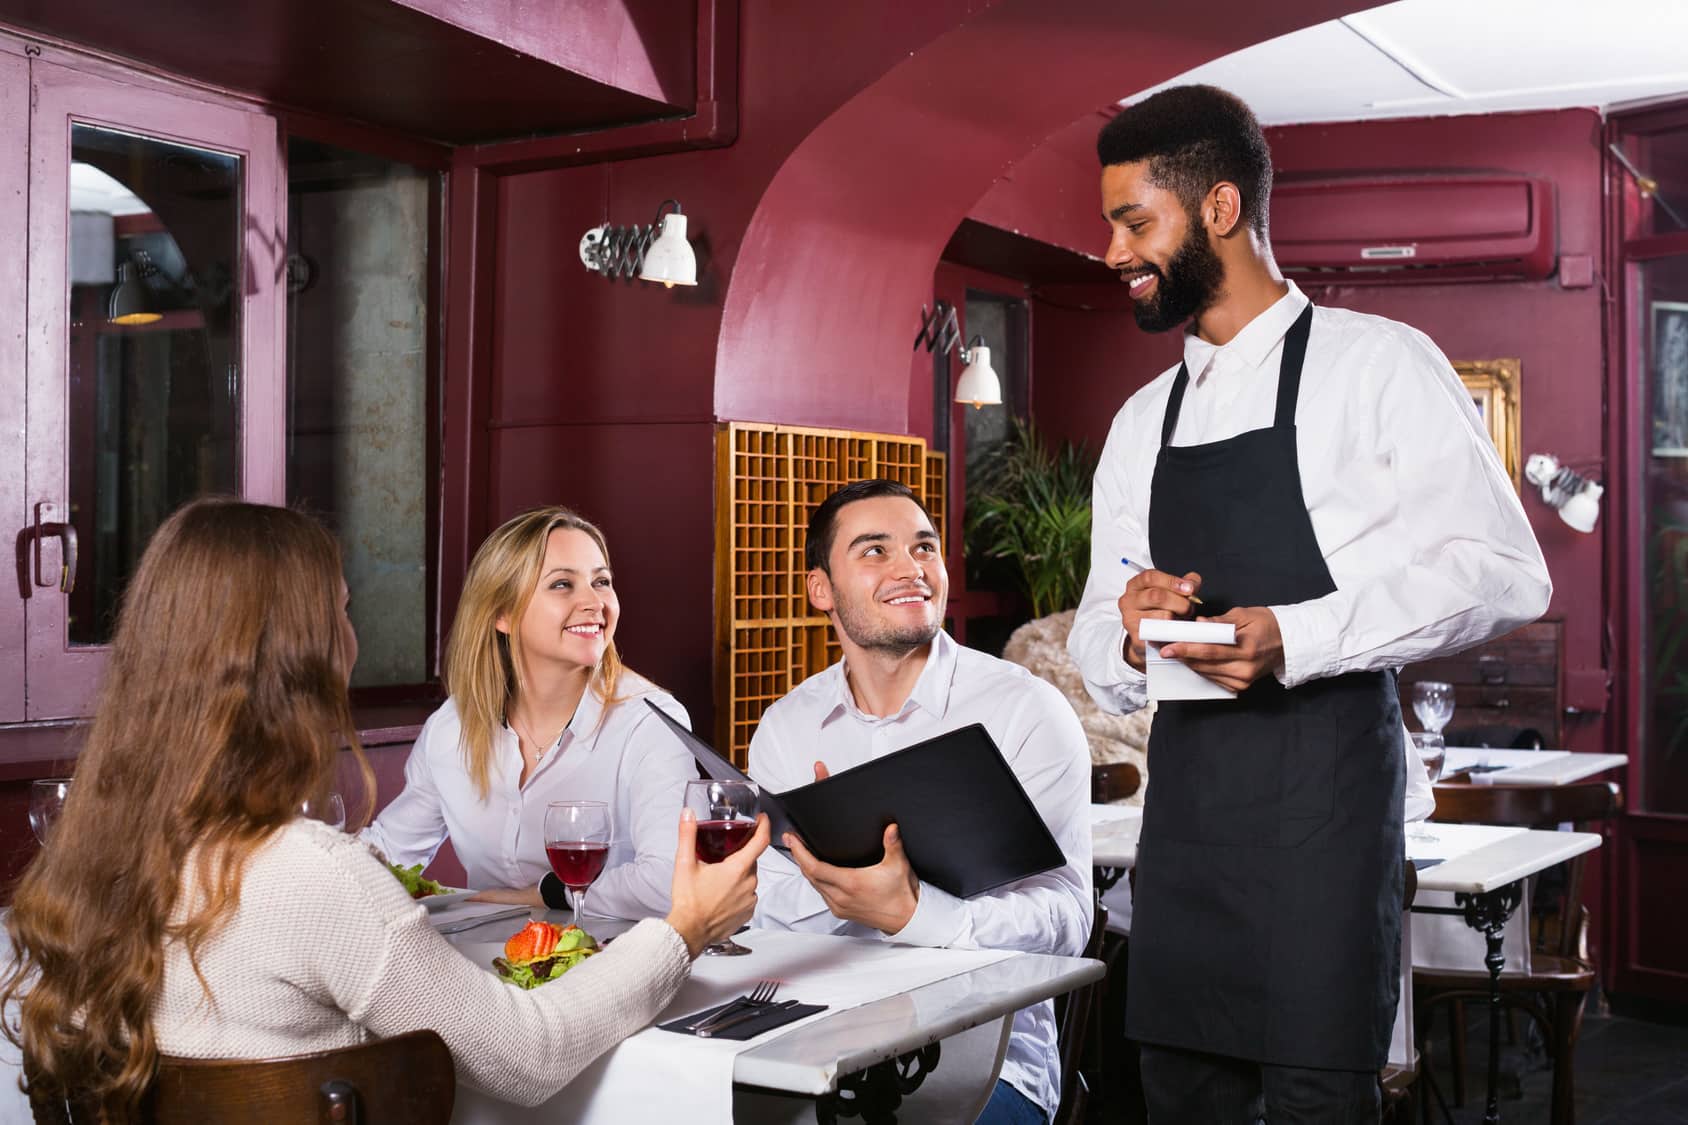 Cadastro de clientes para restaurante: uma ferramenta poderosa